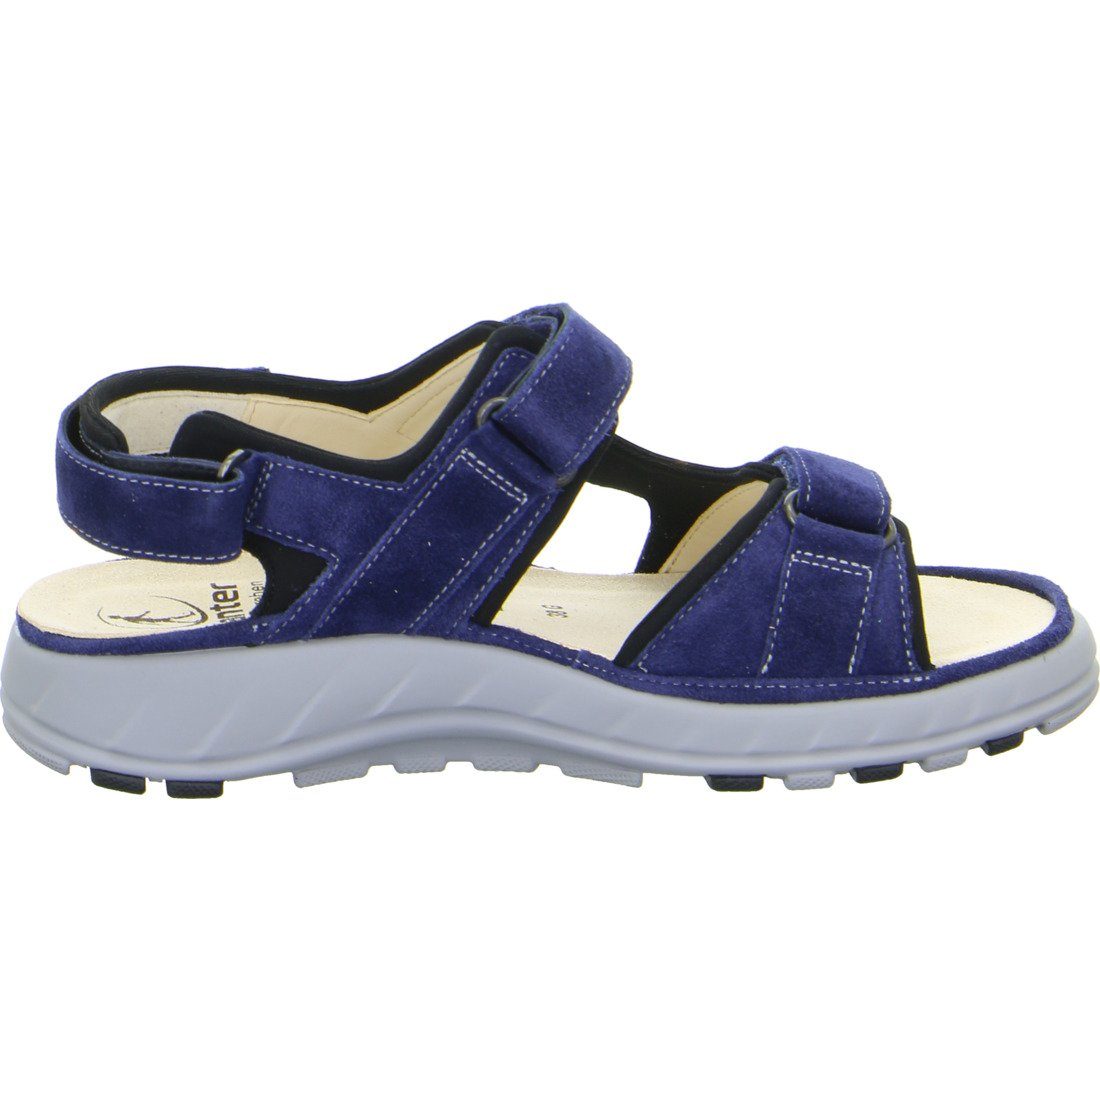 Ganter Sandalette Schuhe, - Ganter Geva 048814 Velours blau Damen Sandalette